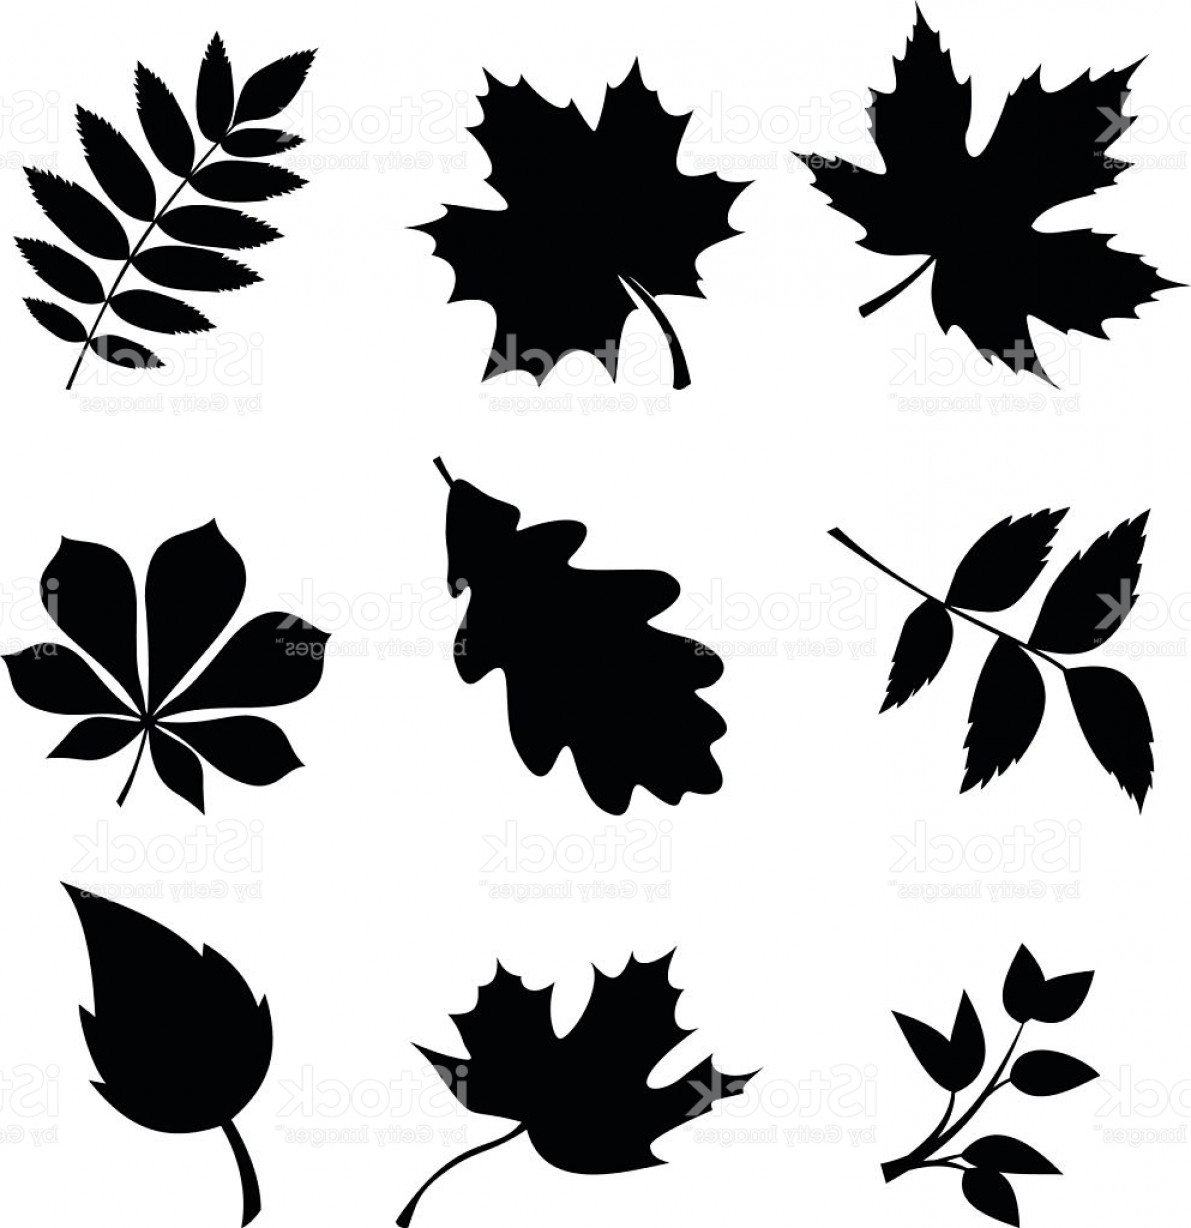 Leaf Vector Black at Vectorified.com | Collection of Leaf Vector Black ...